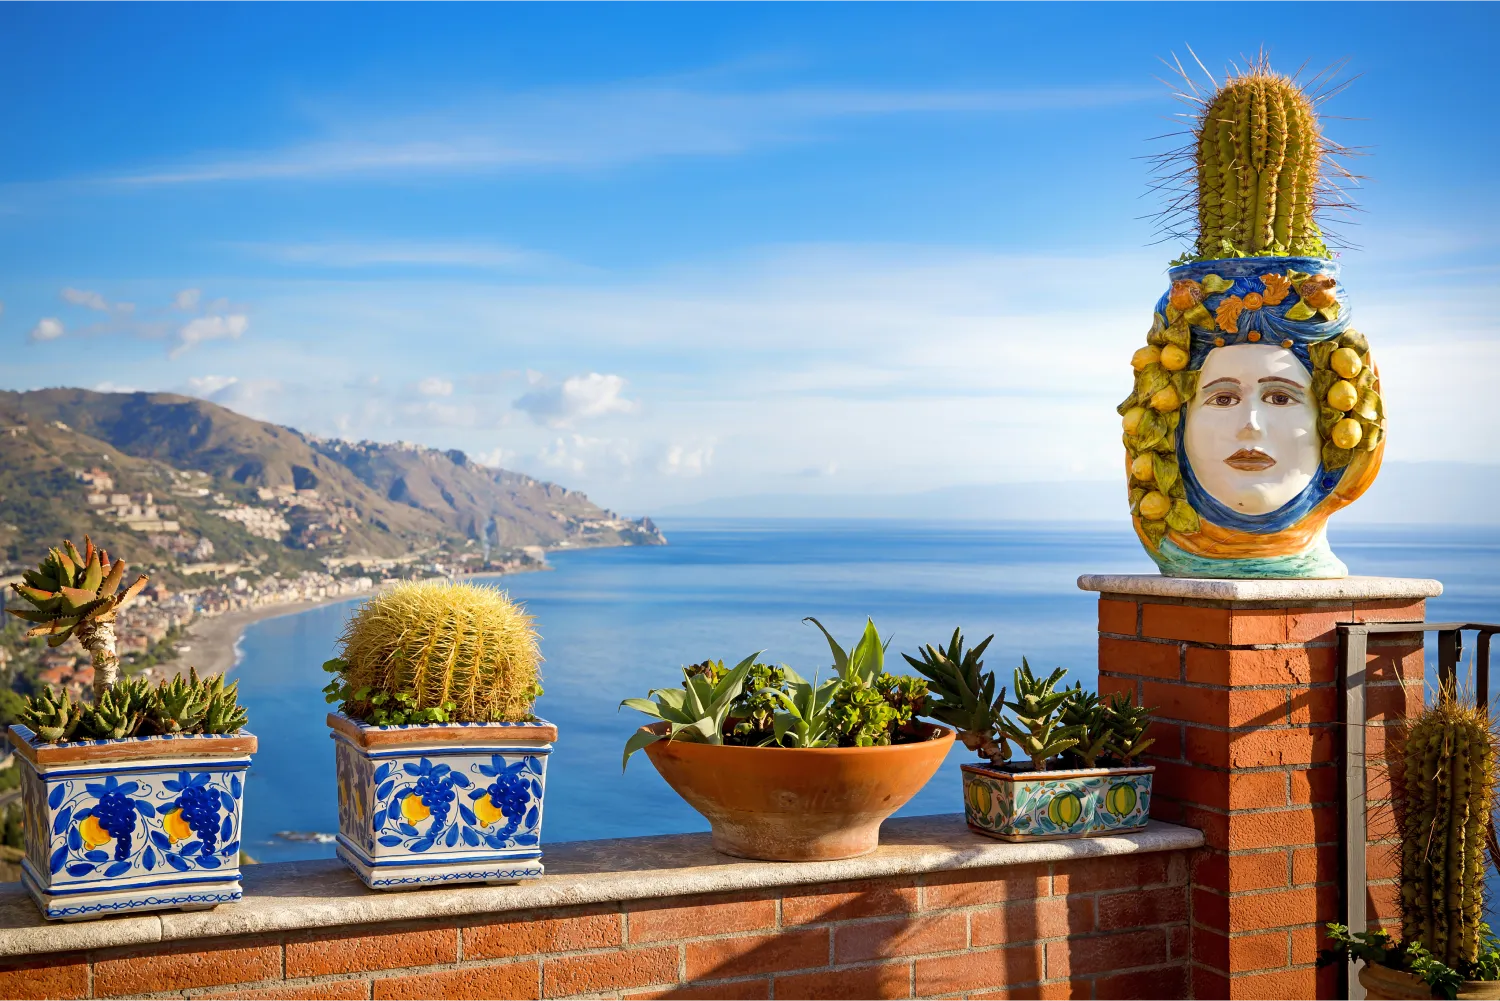 Blumentöpfe auf einem Balkon in Sizilien und schöne Aussicht auf die Küste Taormina im Hintergrund